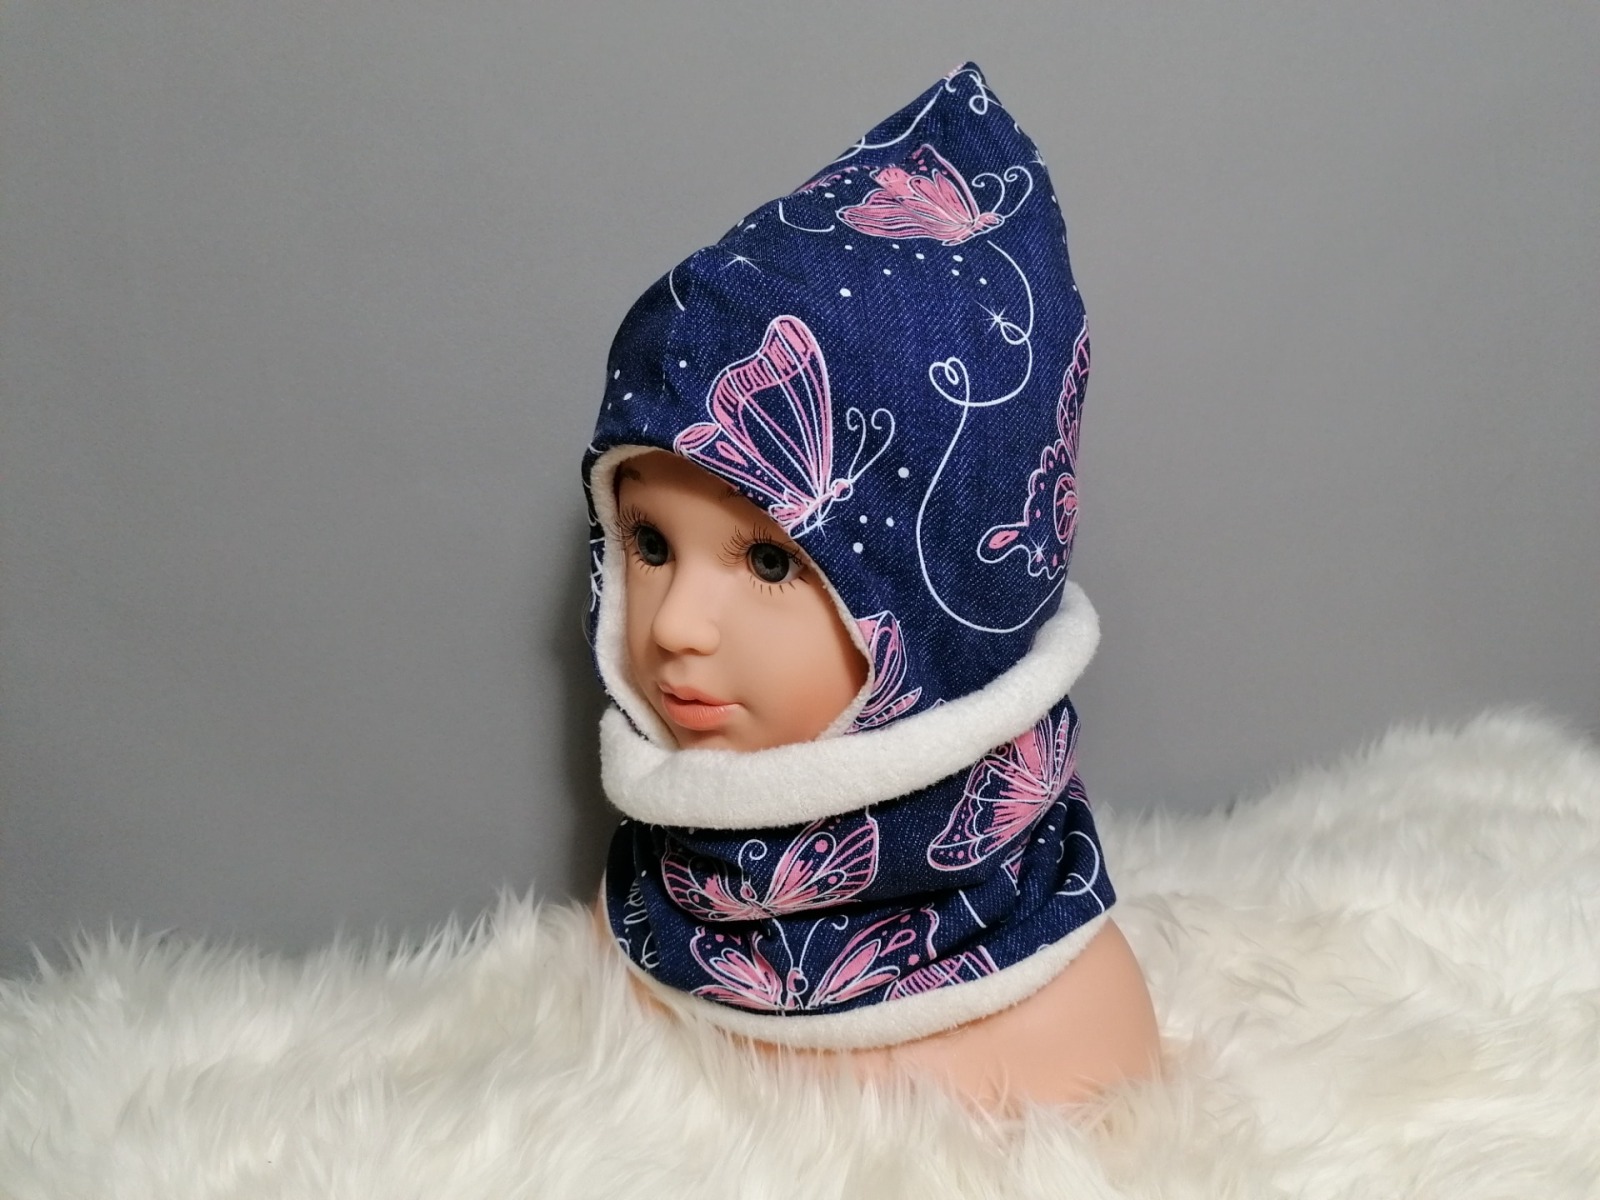 Ohrenmütze Zipfelmütze für Babys und Kinder mit Jersey Plüsch oder Fleece gefüttert Schmetterlinge Jeansoptik blau rosa Kopfumfang 35-55cm 4